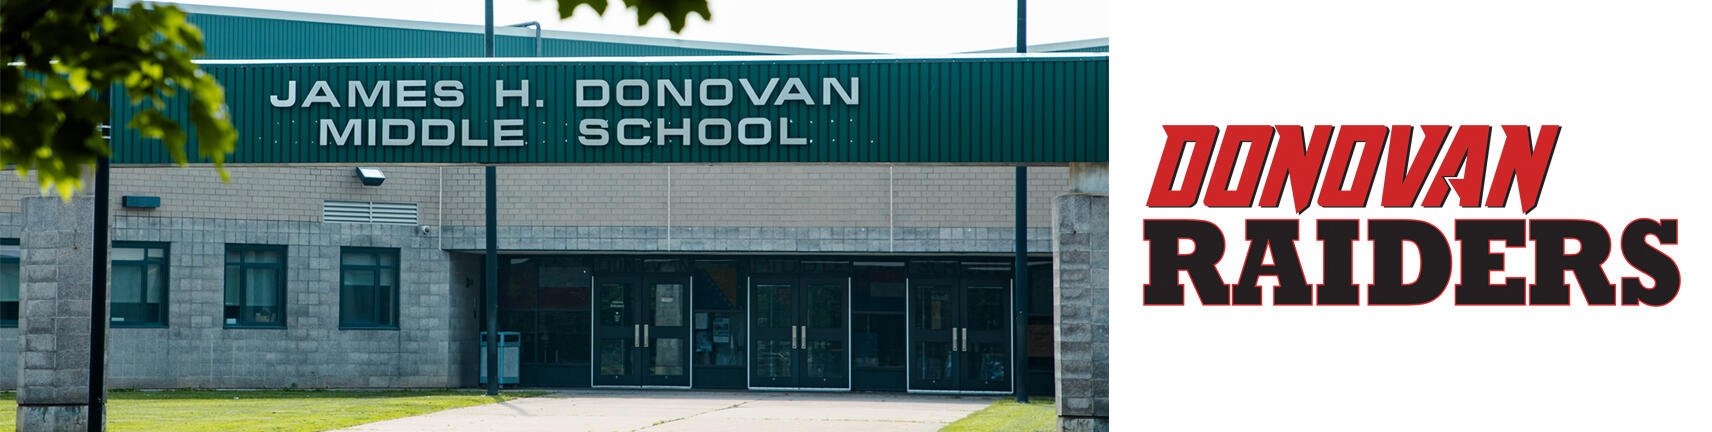 Зображення будівлі школи Донован та логотипу "Донован Рейдерс